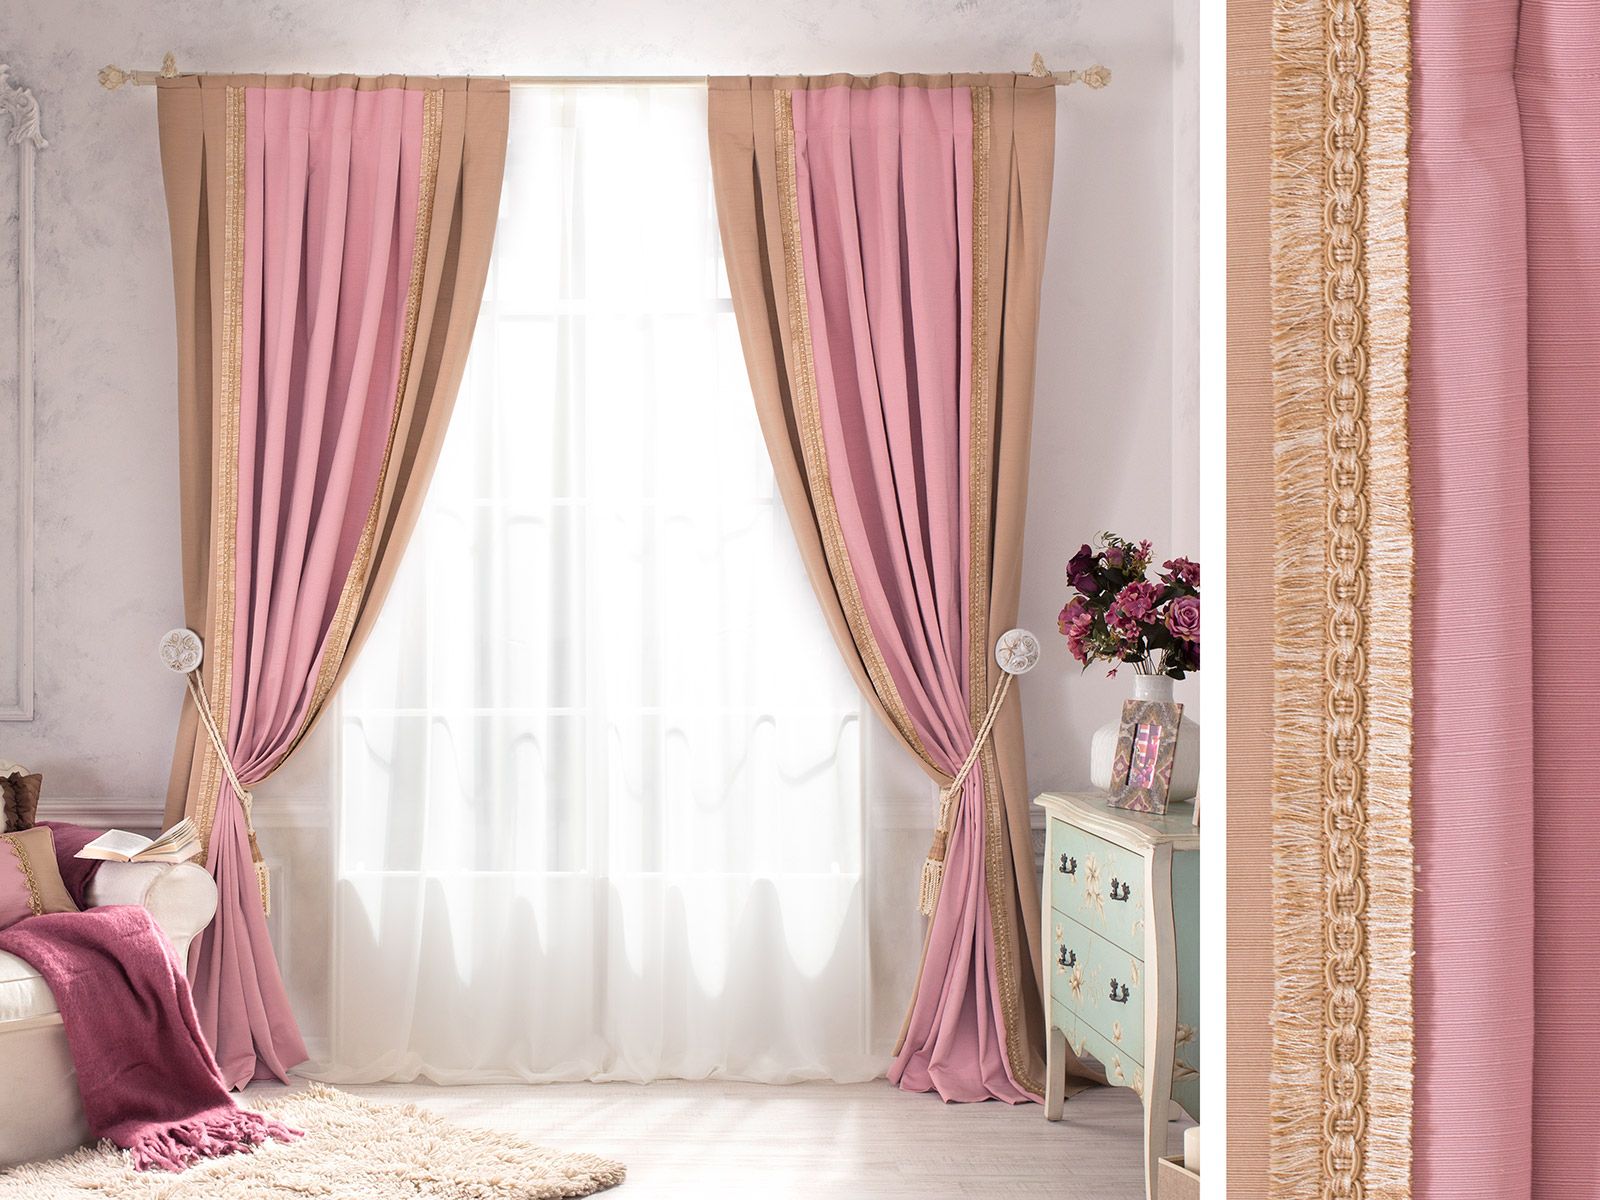 Розовые шторы в интерьере: удачные комбинации и дизайн